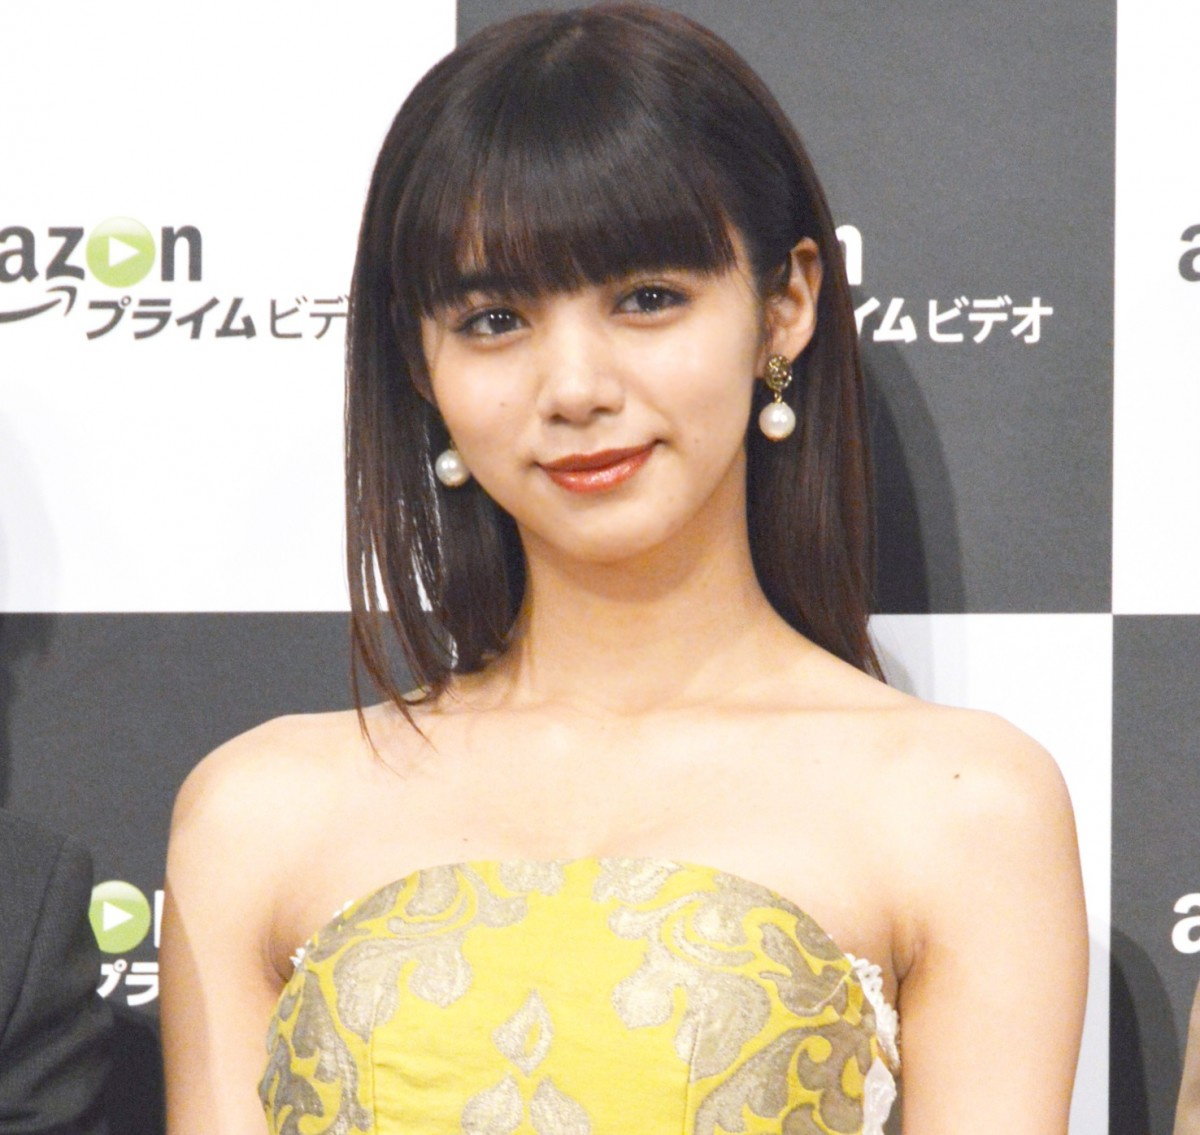 池田エライザが風疹発症 主演映画 貞子 イベント急きょ欠席へ 医師の判断 Oricon News